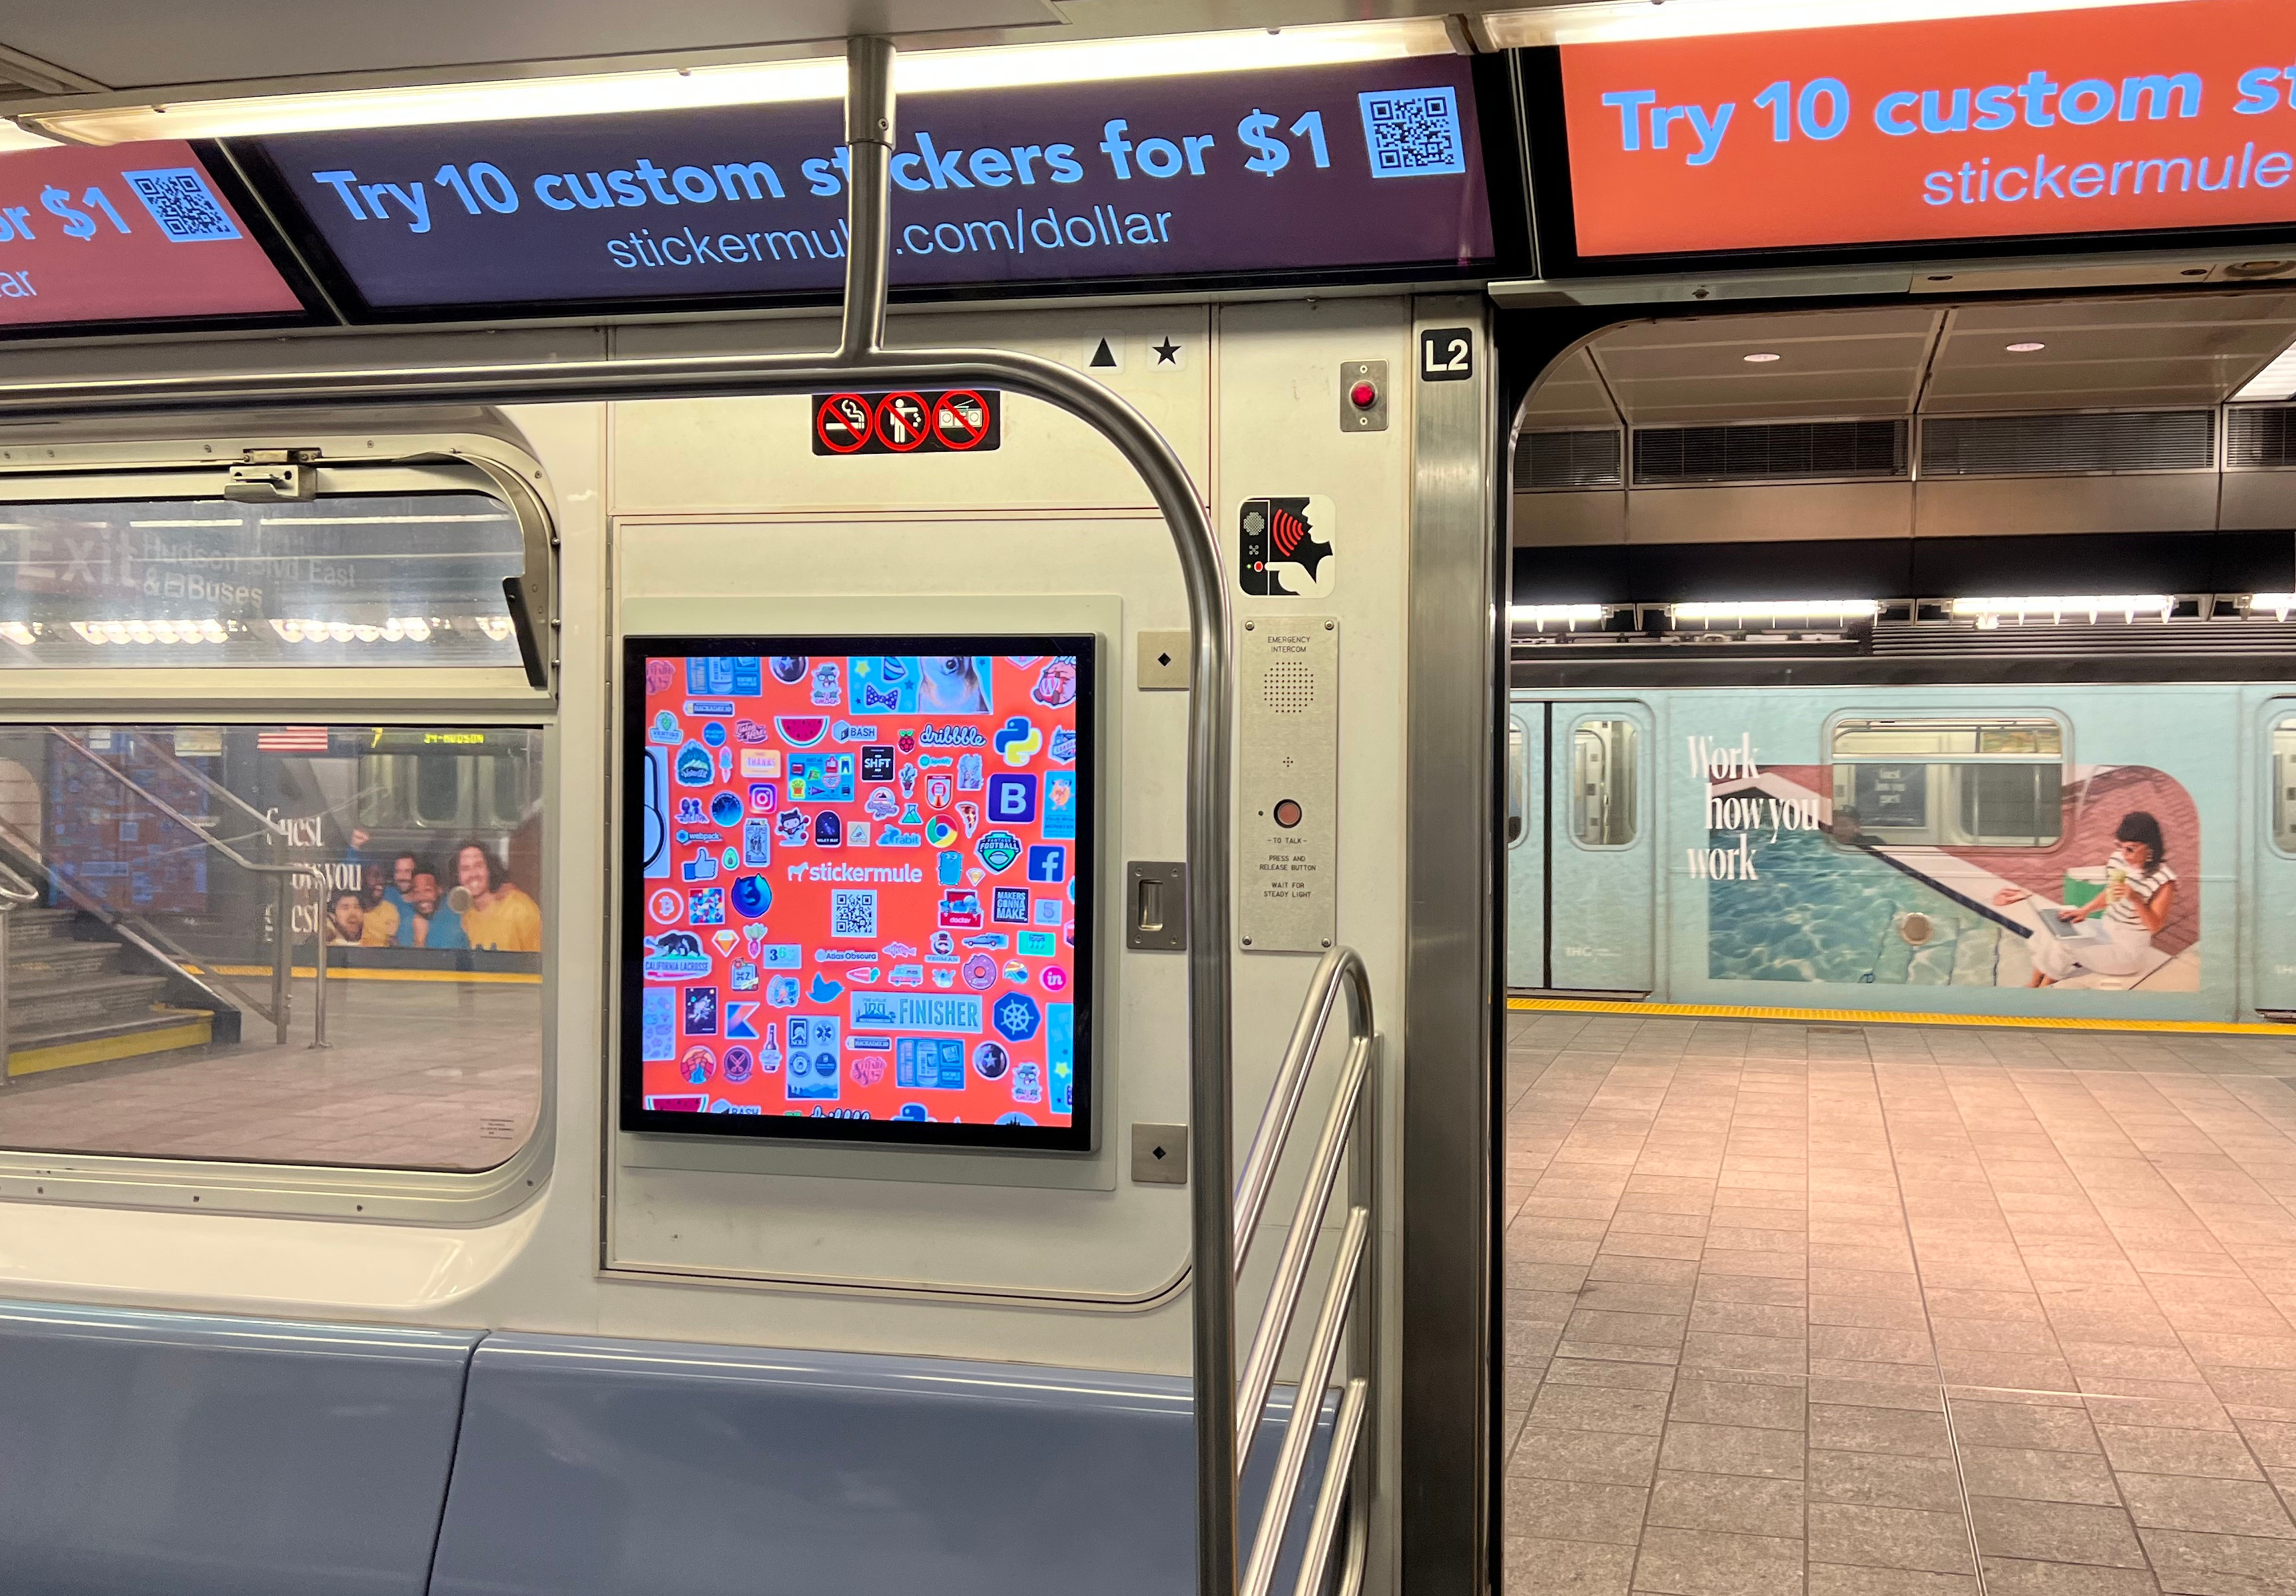 adesivos personalizados york city subway sticker mule